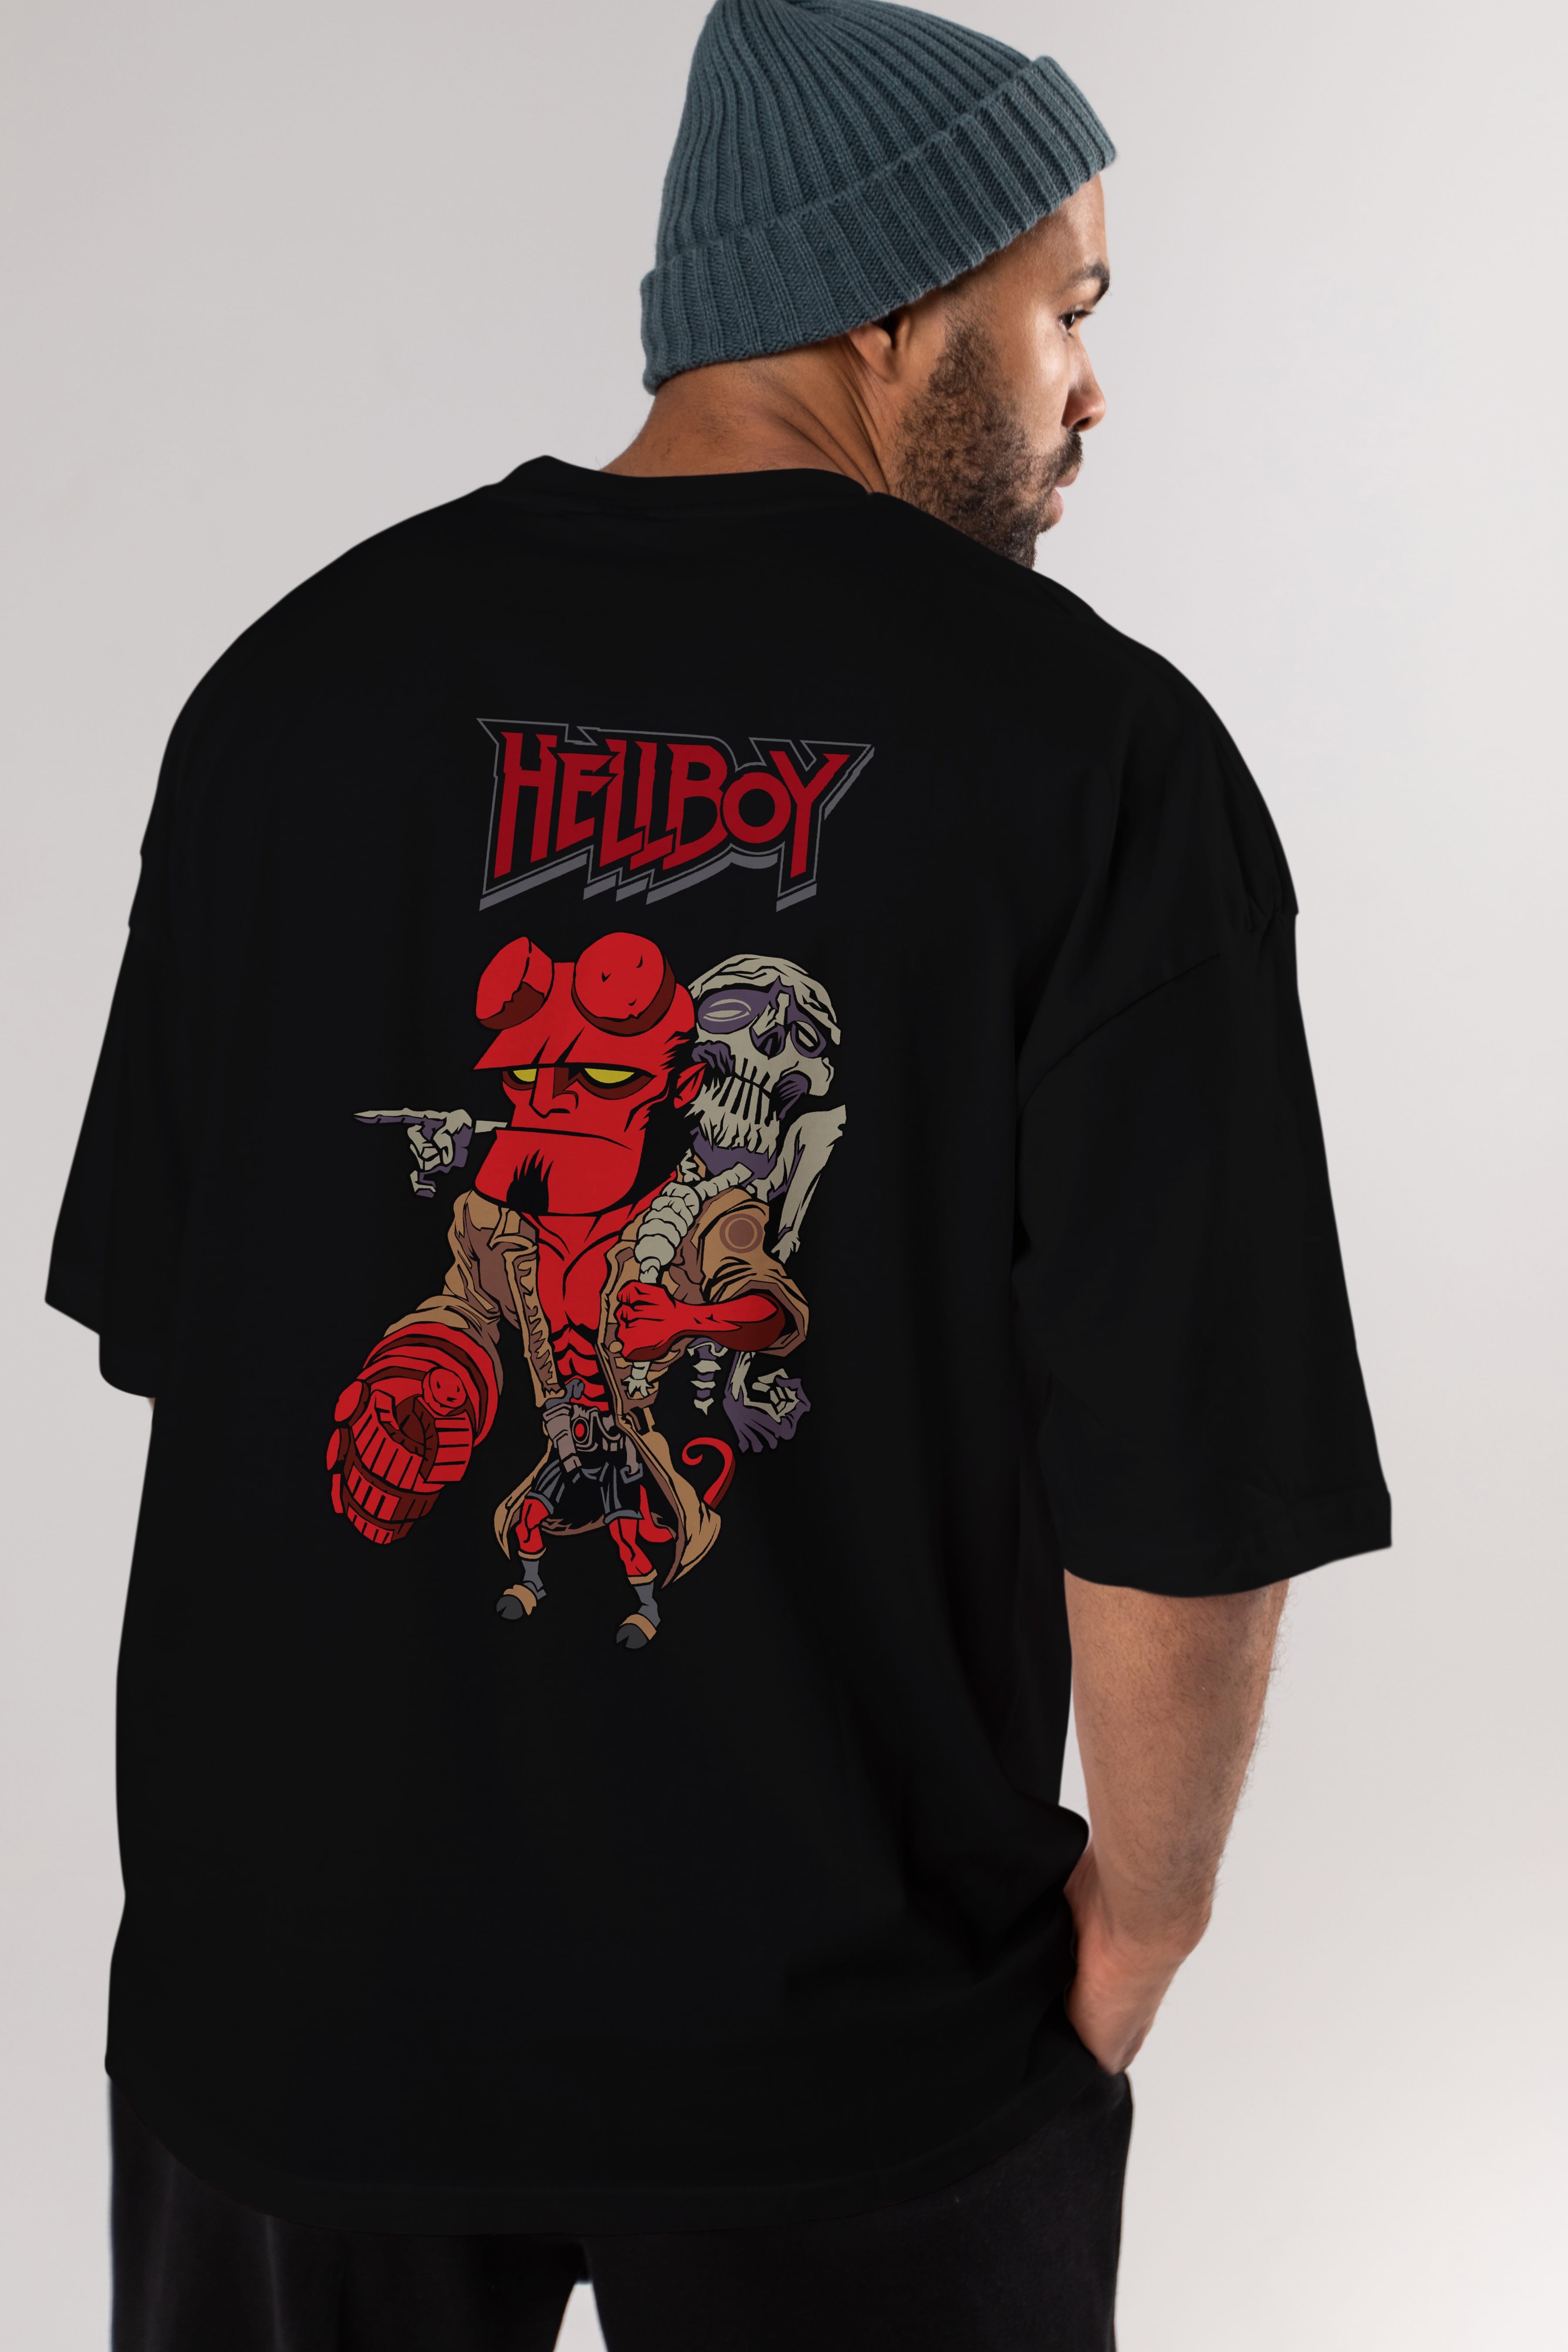 Hellboy (2) Arka Baskılı Oversize t-shirt Erkek Kadın Unisex %100 Pamuk Bisiklet Yaka tişort